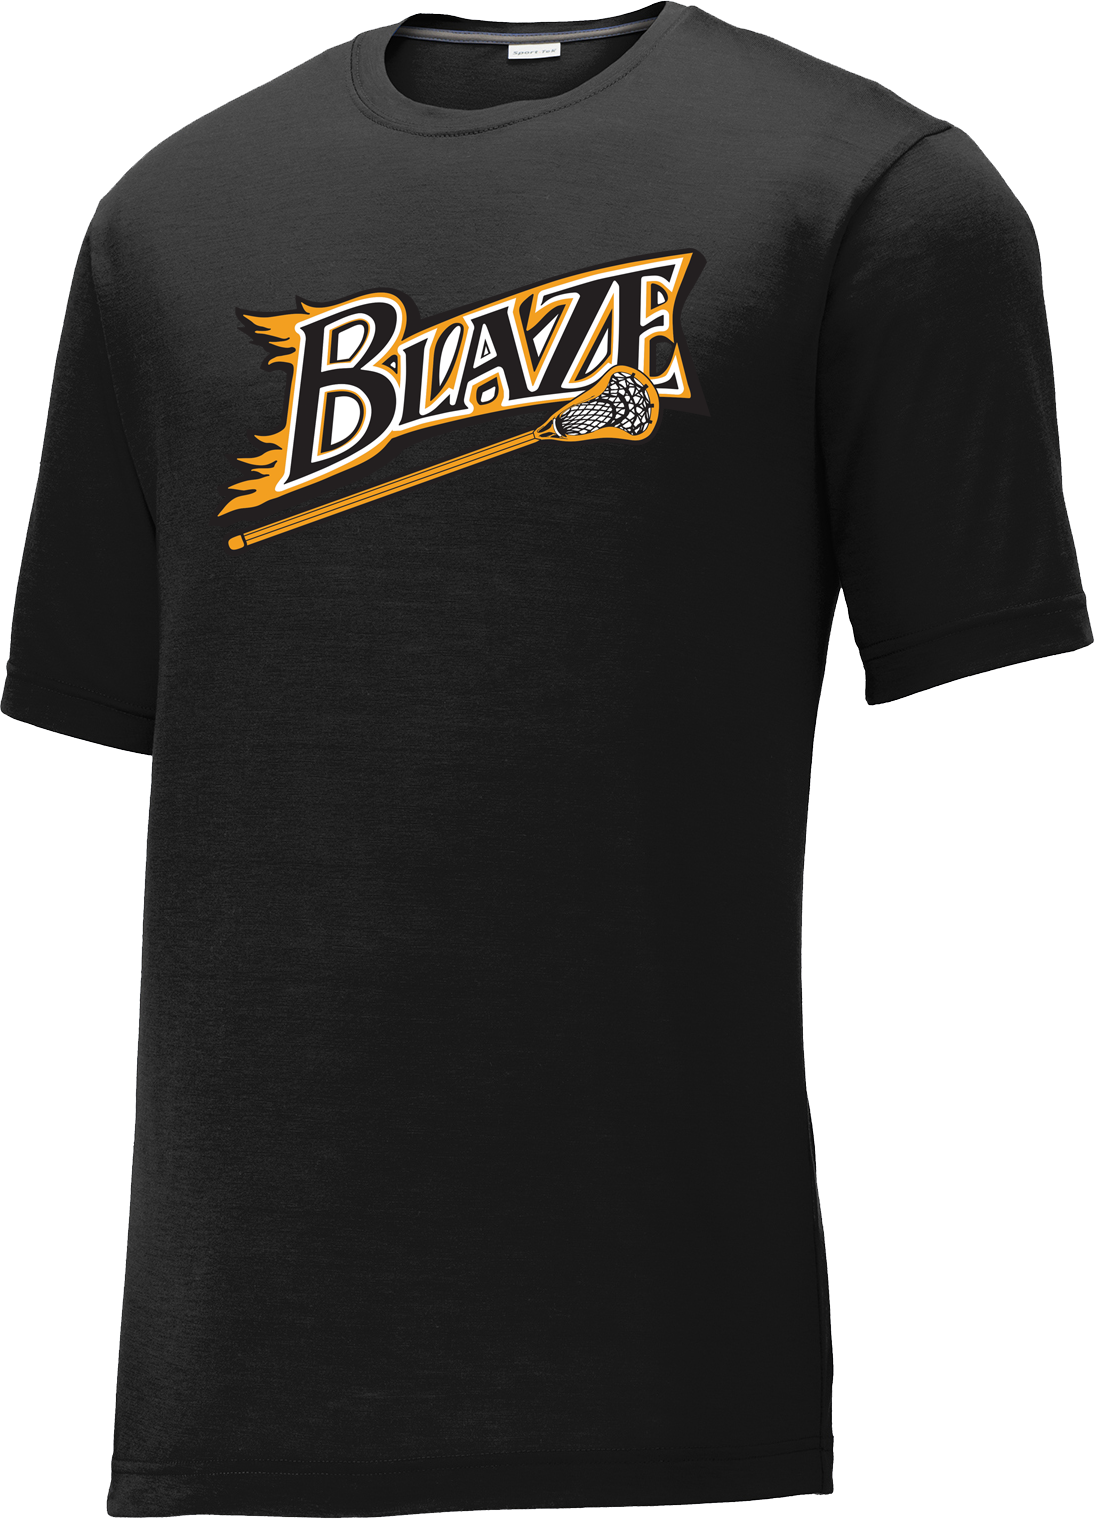 Blaze Lacrosse Black CottonTouch Performance T-Shirt